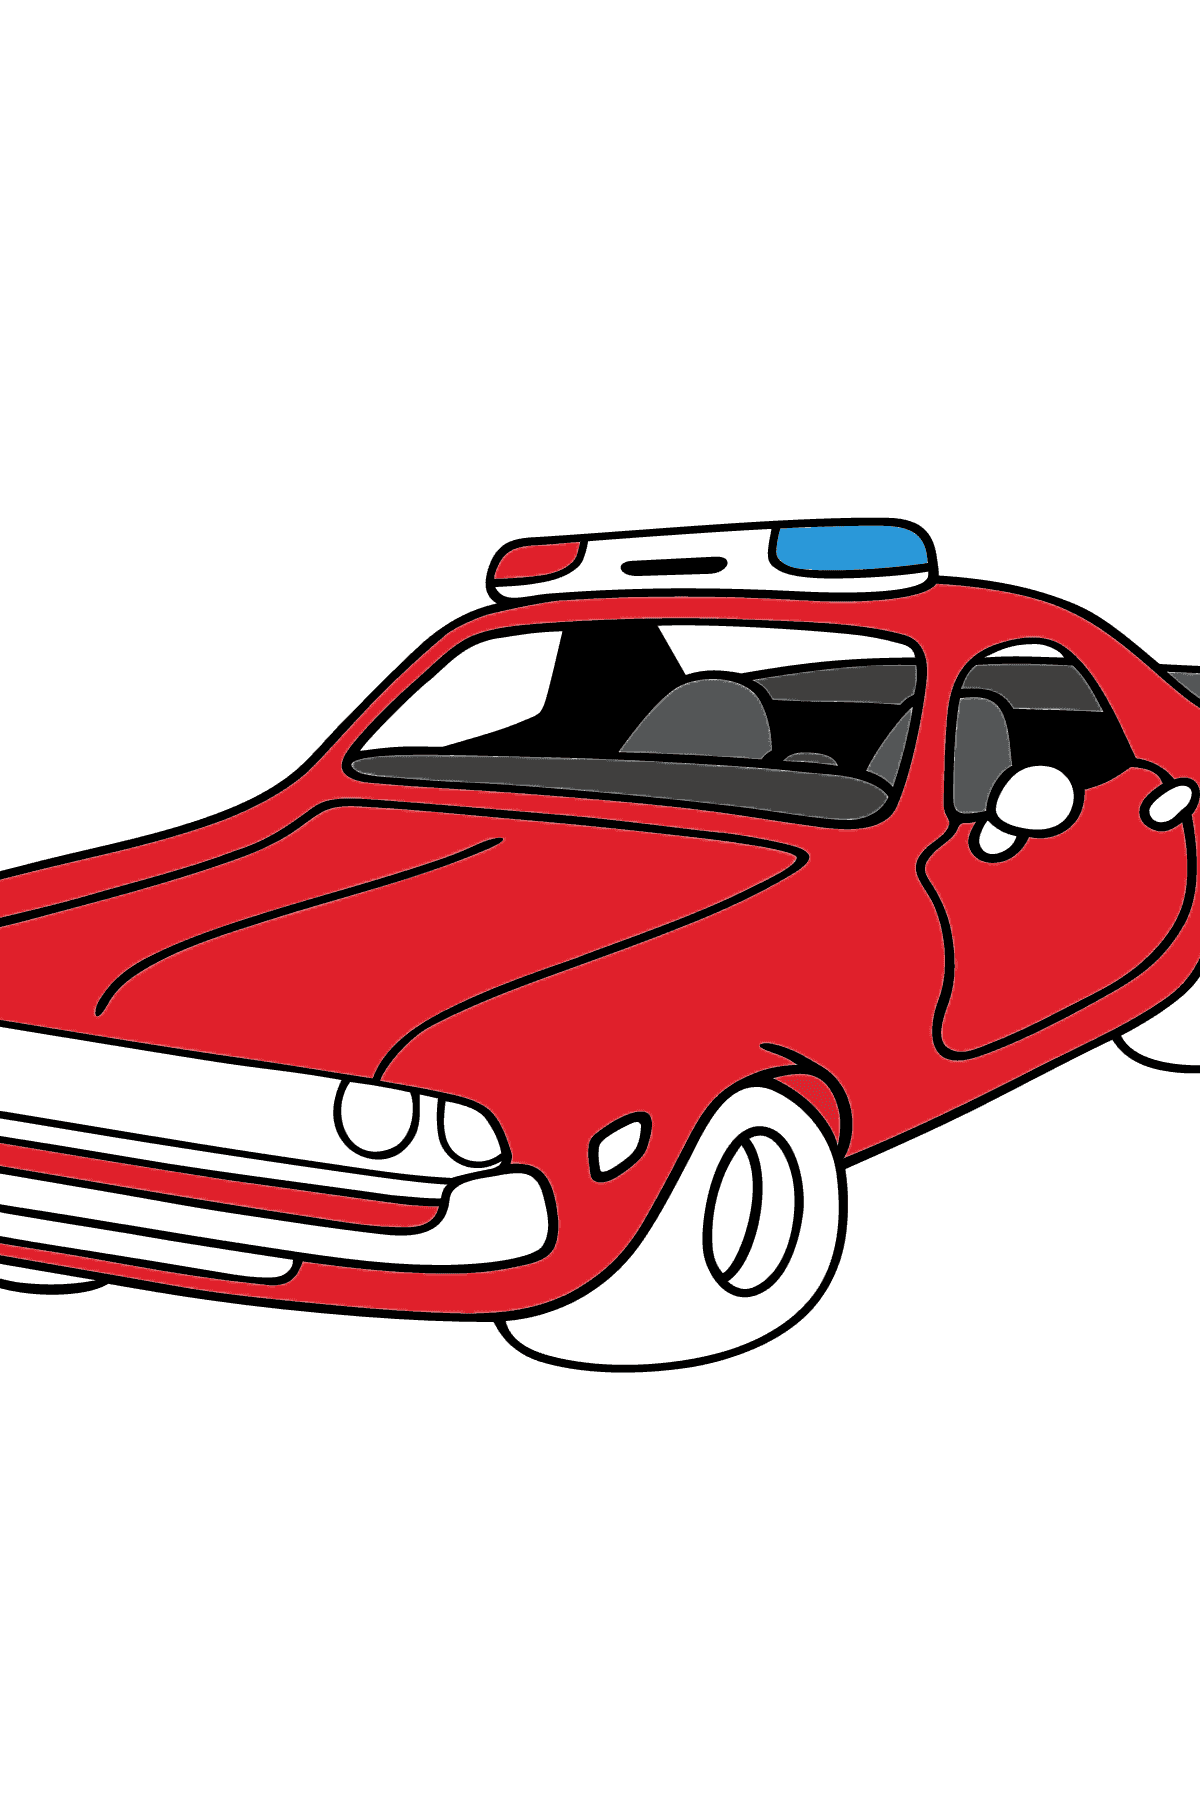 Dibujo para Colorear - Una Patrulla de Policía Roja - Colorear para Niños